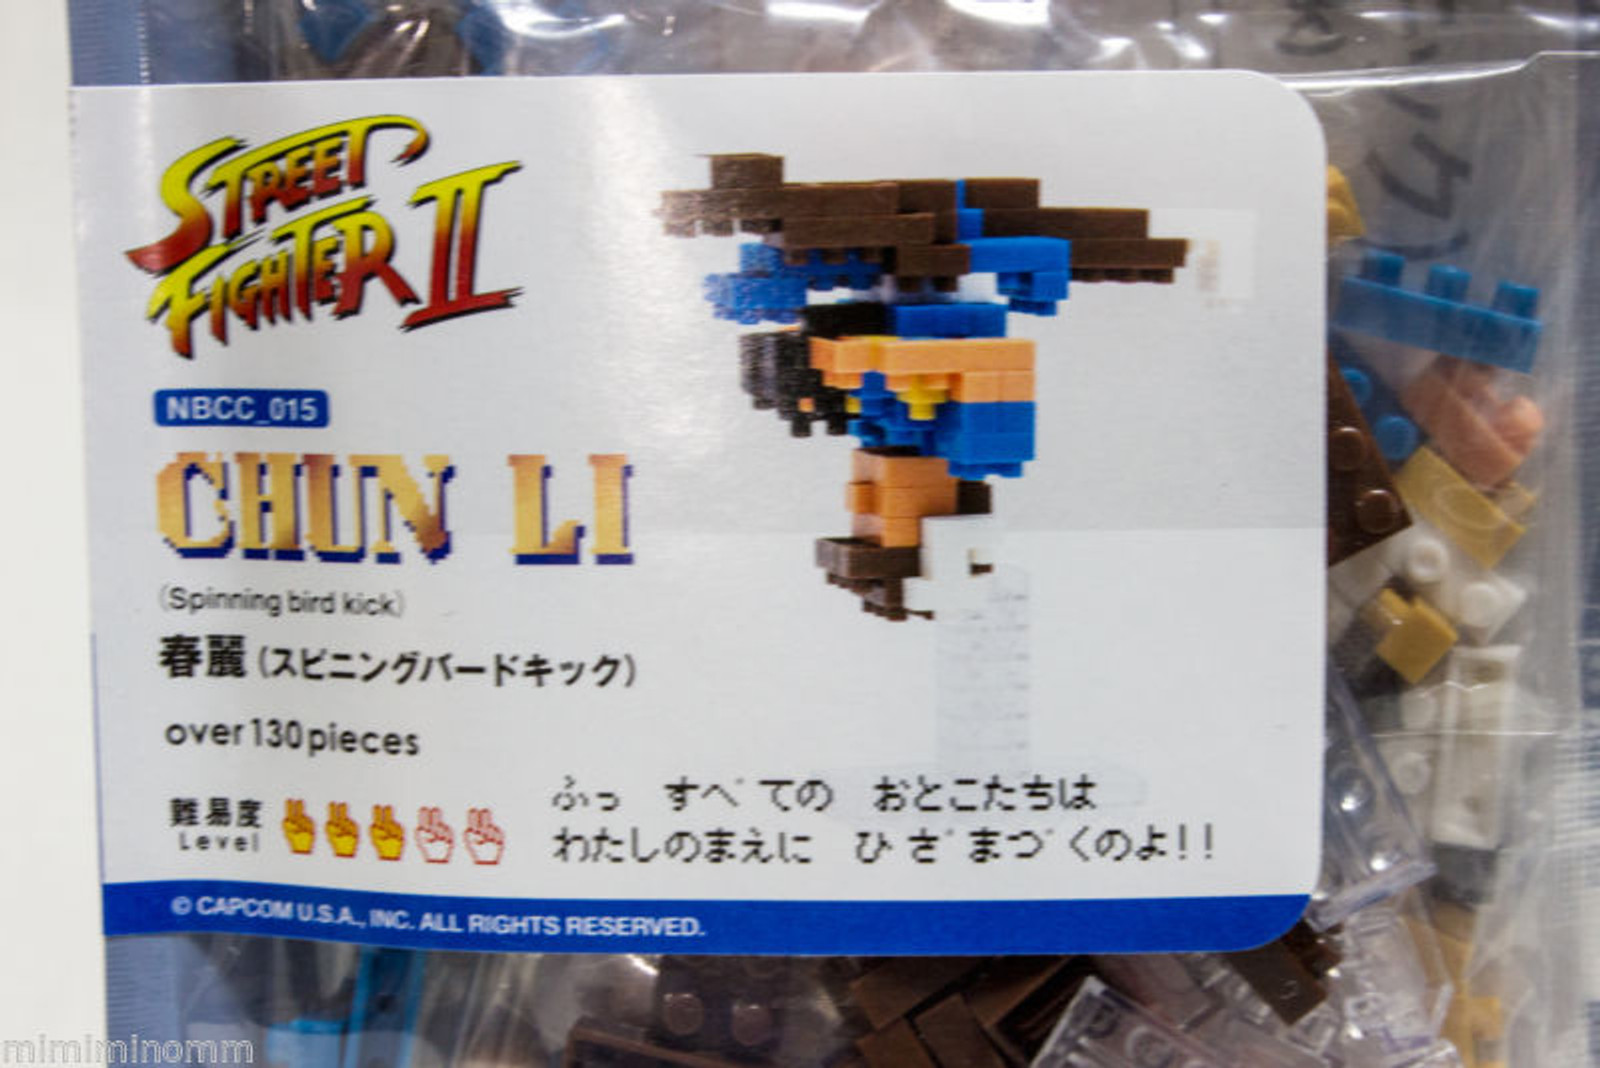 Street Fighter 2 Chun-Li Kawada Nanoblock Nano Block NBCC-0015 JAPAN FIGURE